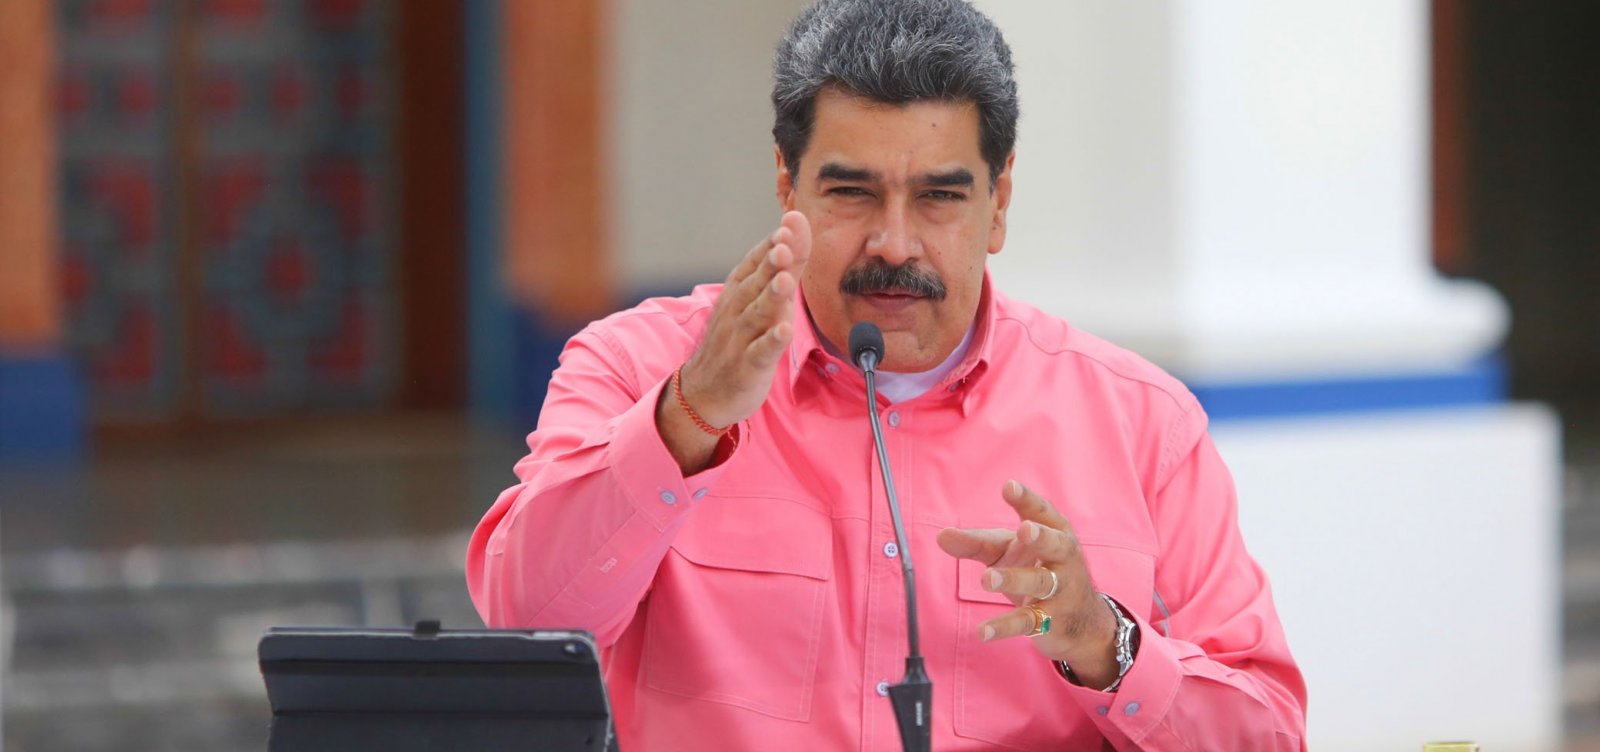 [Facebook suspende página de Maduro por divulgar falso 'remédio milagroso' contra Covid-19]